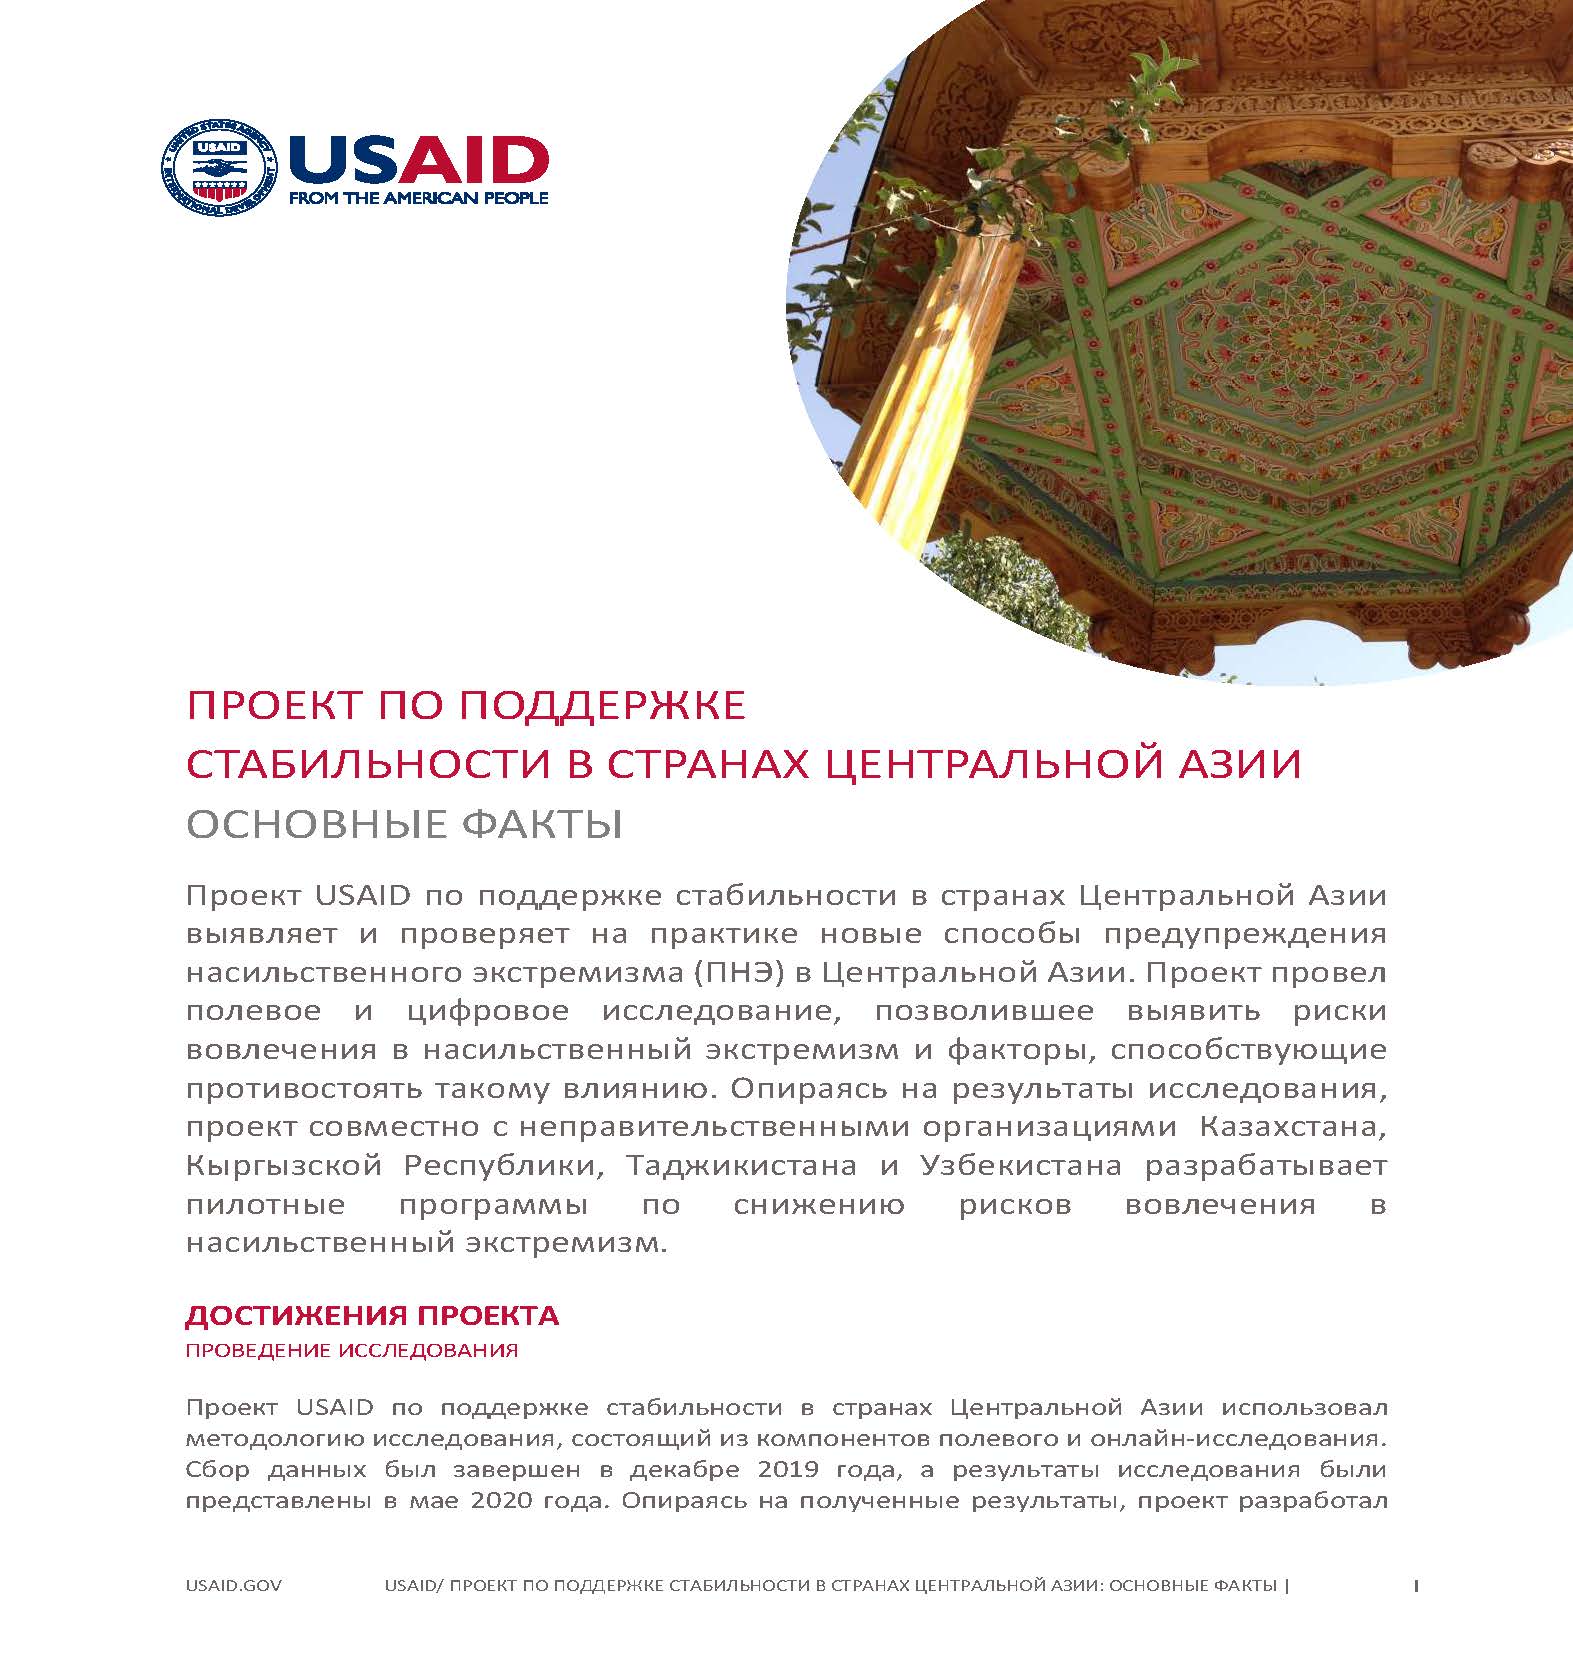 Проект USAID по поддержке стабильности в странах Центральной Азии